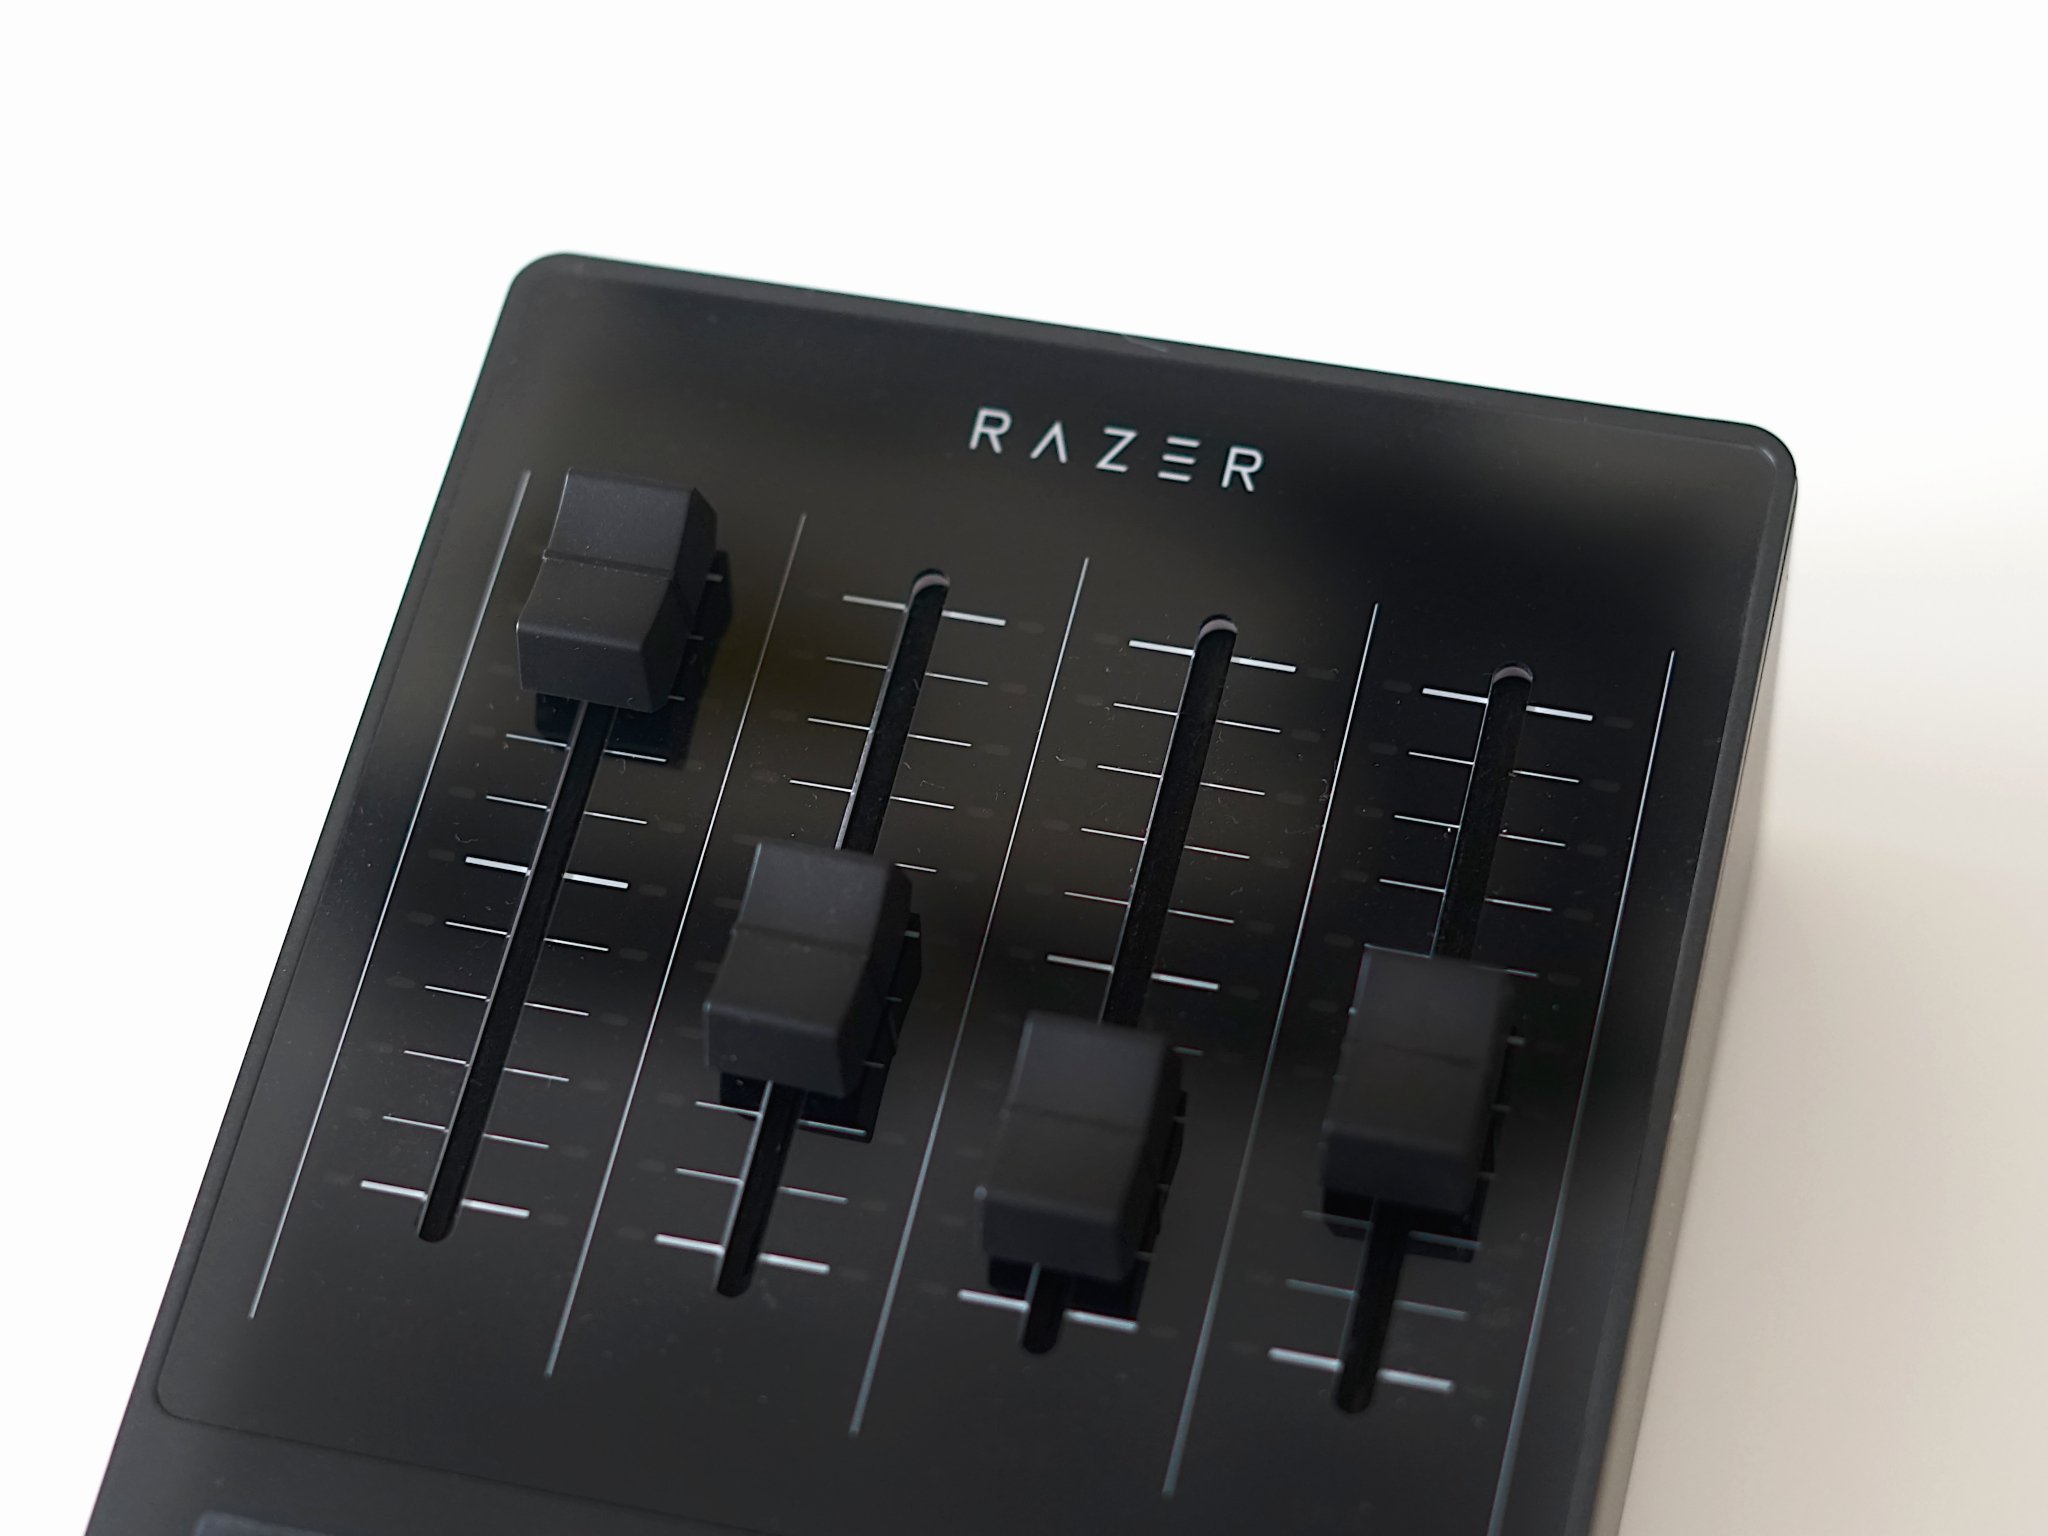 razer-audio-mixer-6.jpg